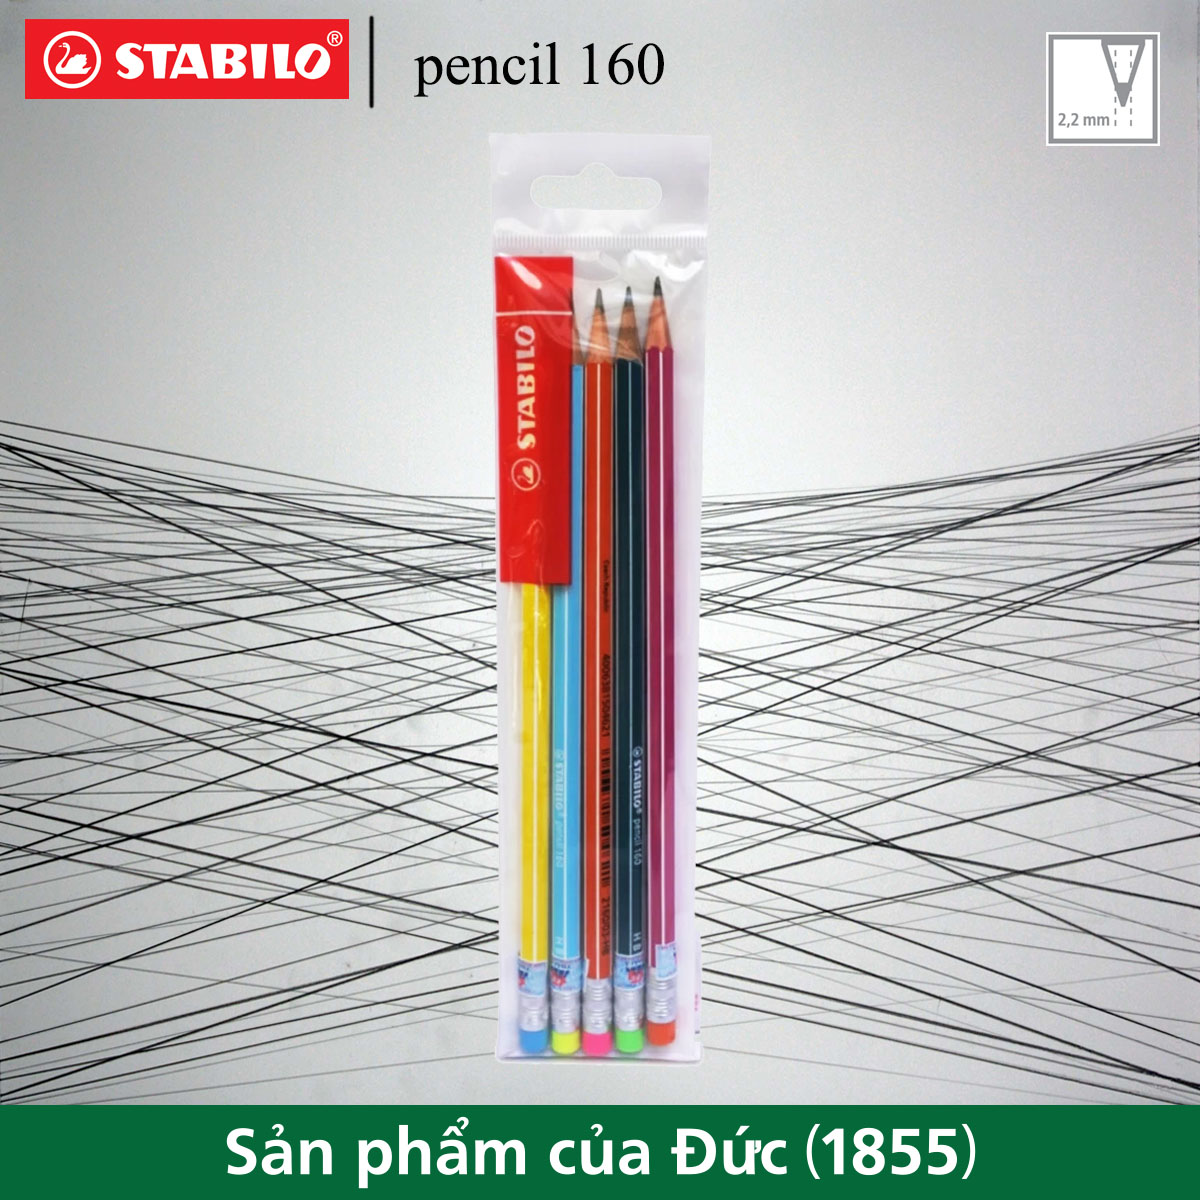 Bộ 5 cây bút chì gỗ STABILO pencil 160 (có gôm) (5 màu)